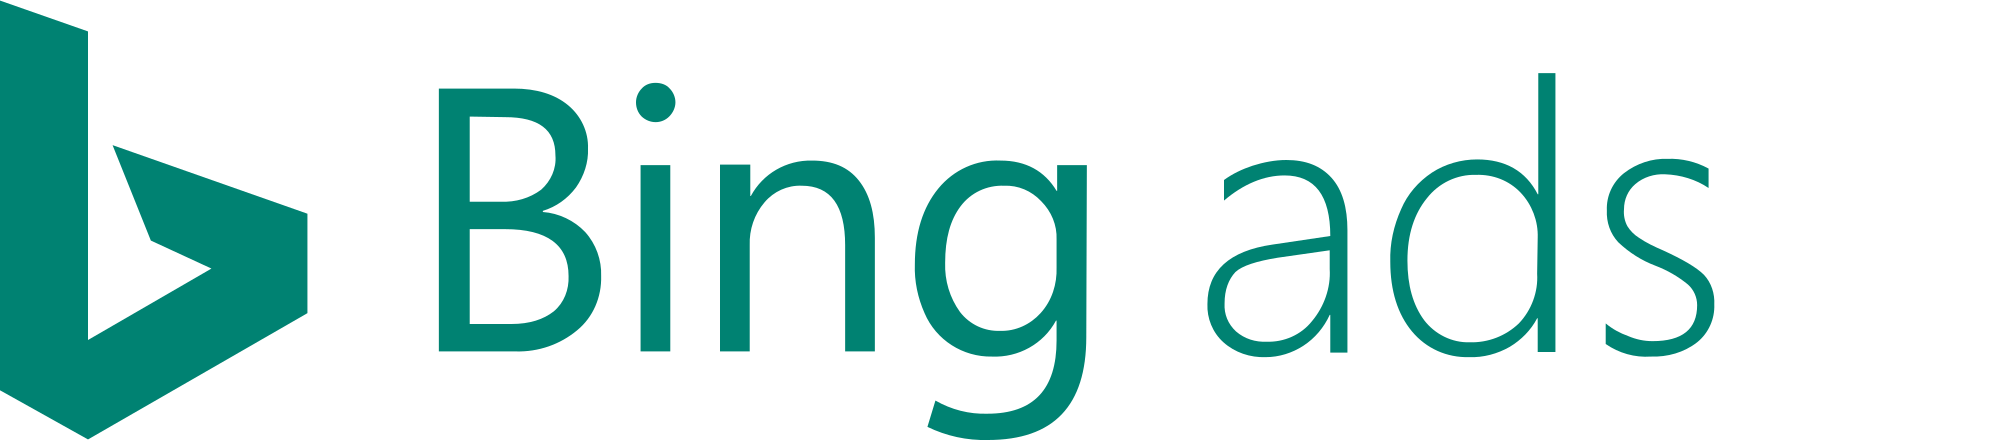 Bing Teal Logo - Bing Ads 2016 logo.svg